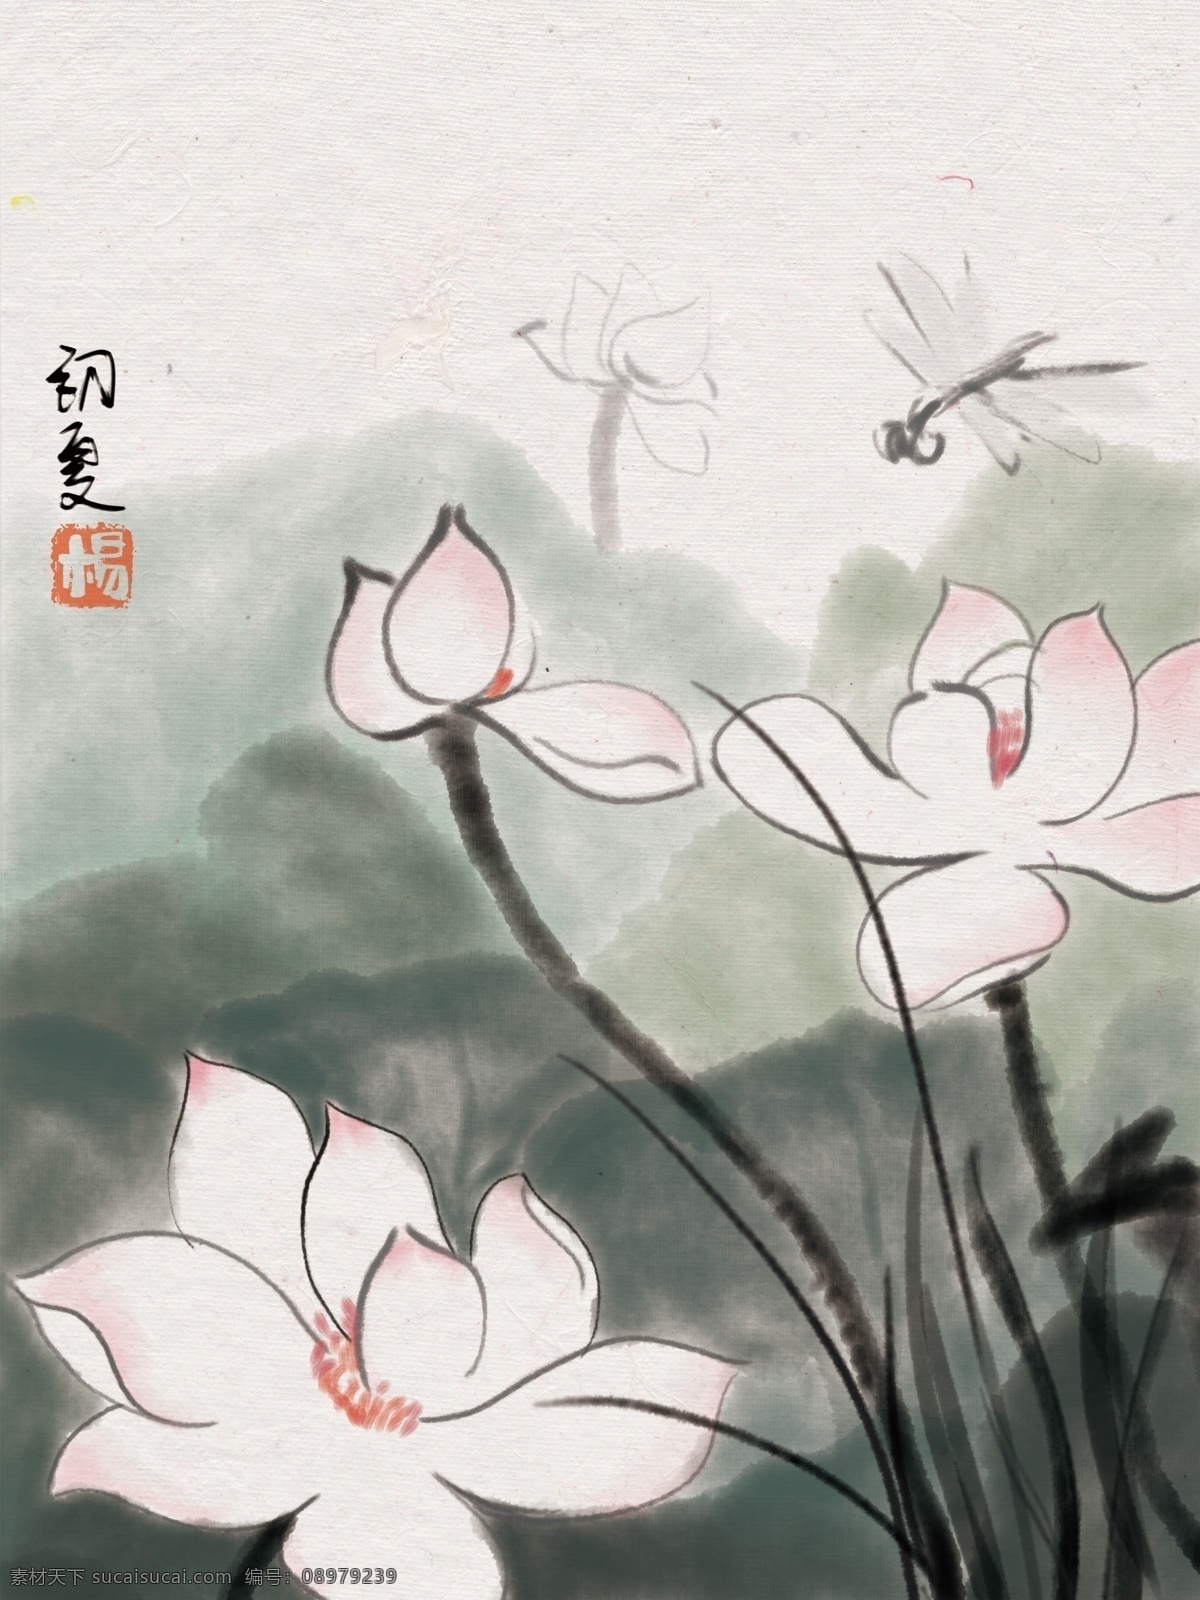 中国 风 水墨 国画 池塘 荷花 装饰画 中国风 意境 手绘 初夏 飞虫 诗意